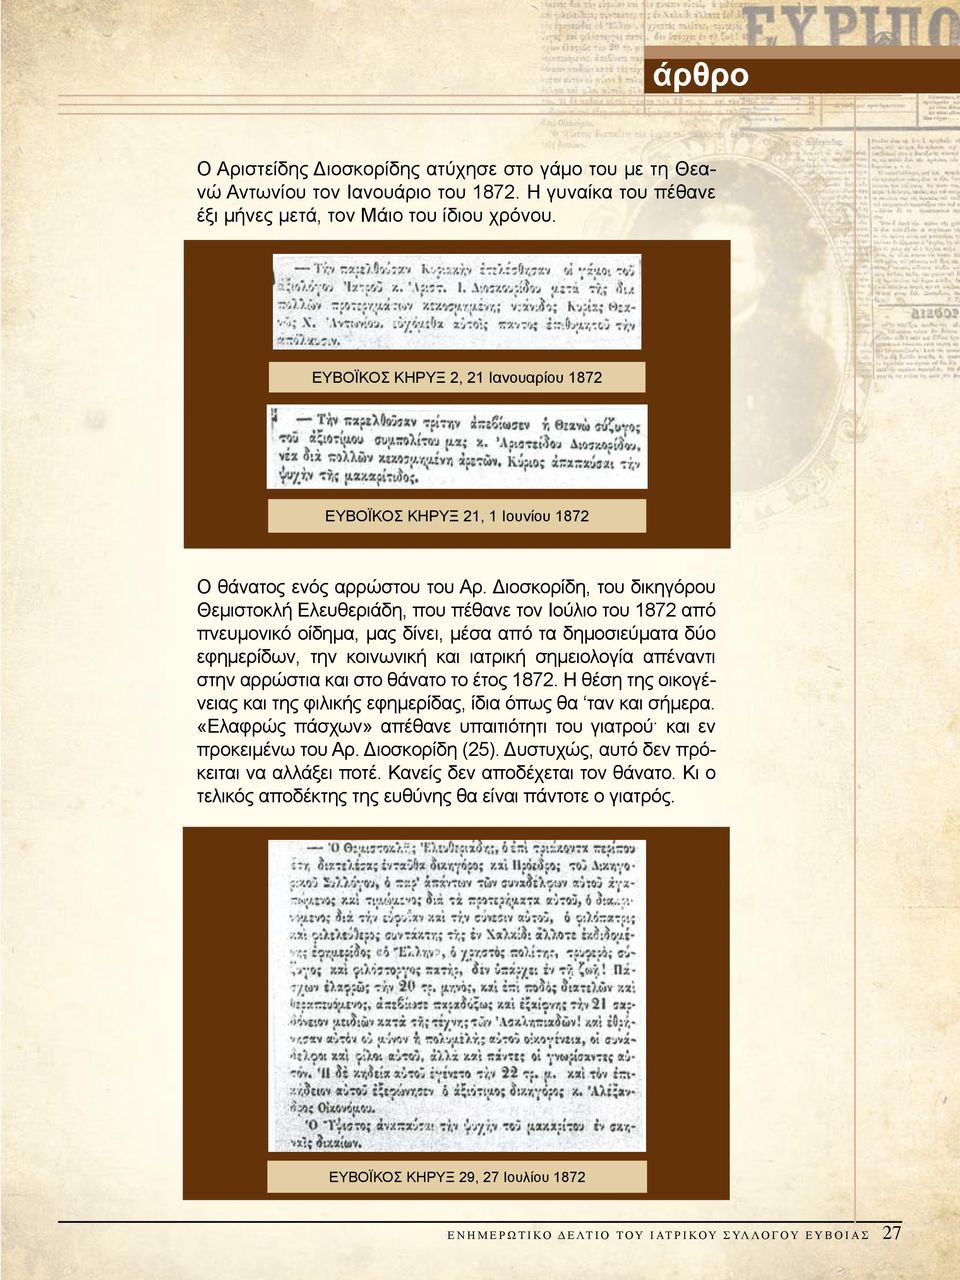 Διοσκορίδη, του δικηγόρου Θεμιστοκλή Ελευθεριάδη, που πέθανε τον Ιούλιο του 1872 από πνευμονικό οίδημα, μας δίνει, μέσα από τα δημοσιεύματα δύο εφημερίδων, την κοινωνική και ιατρική σημειολογία